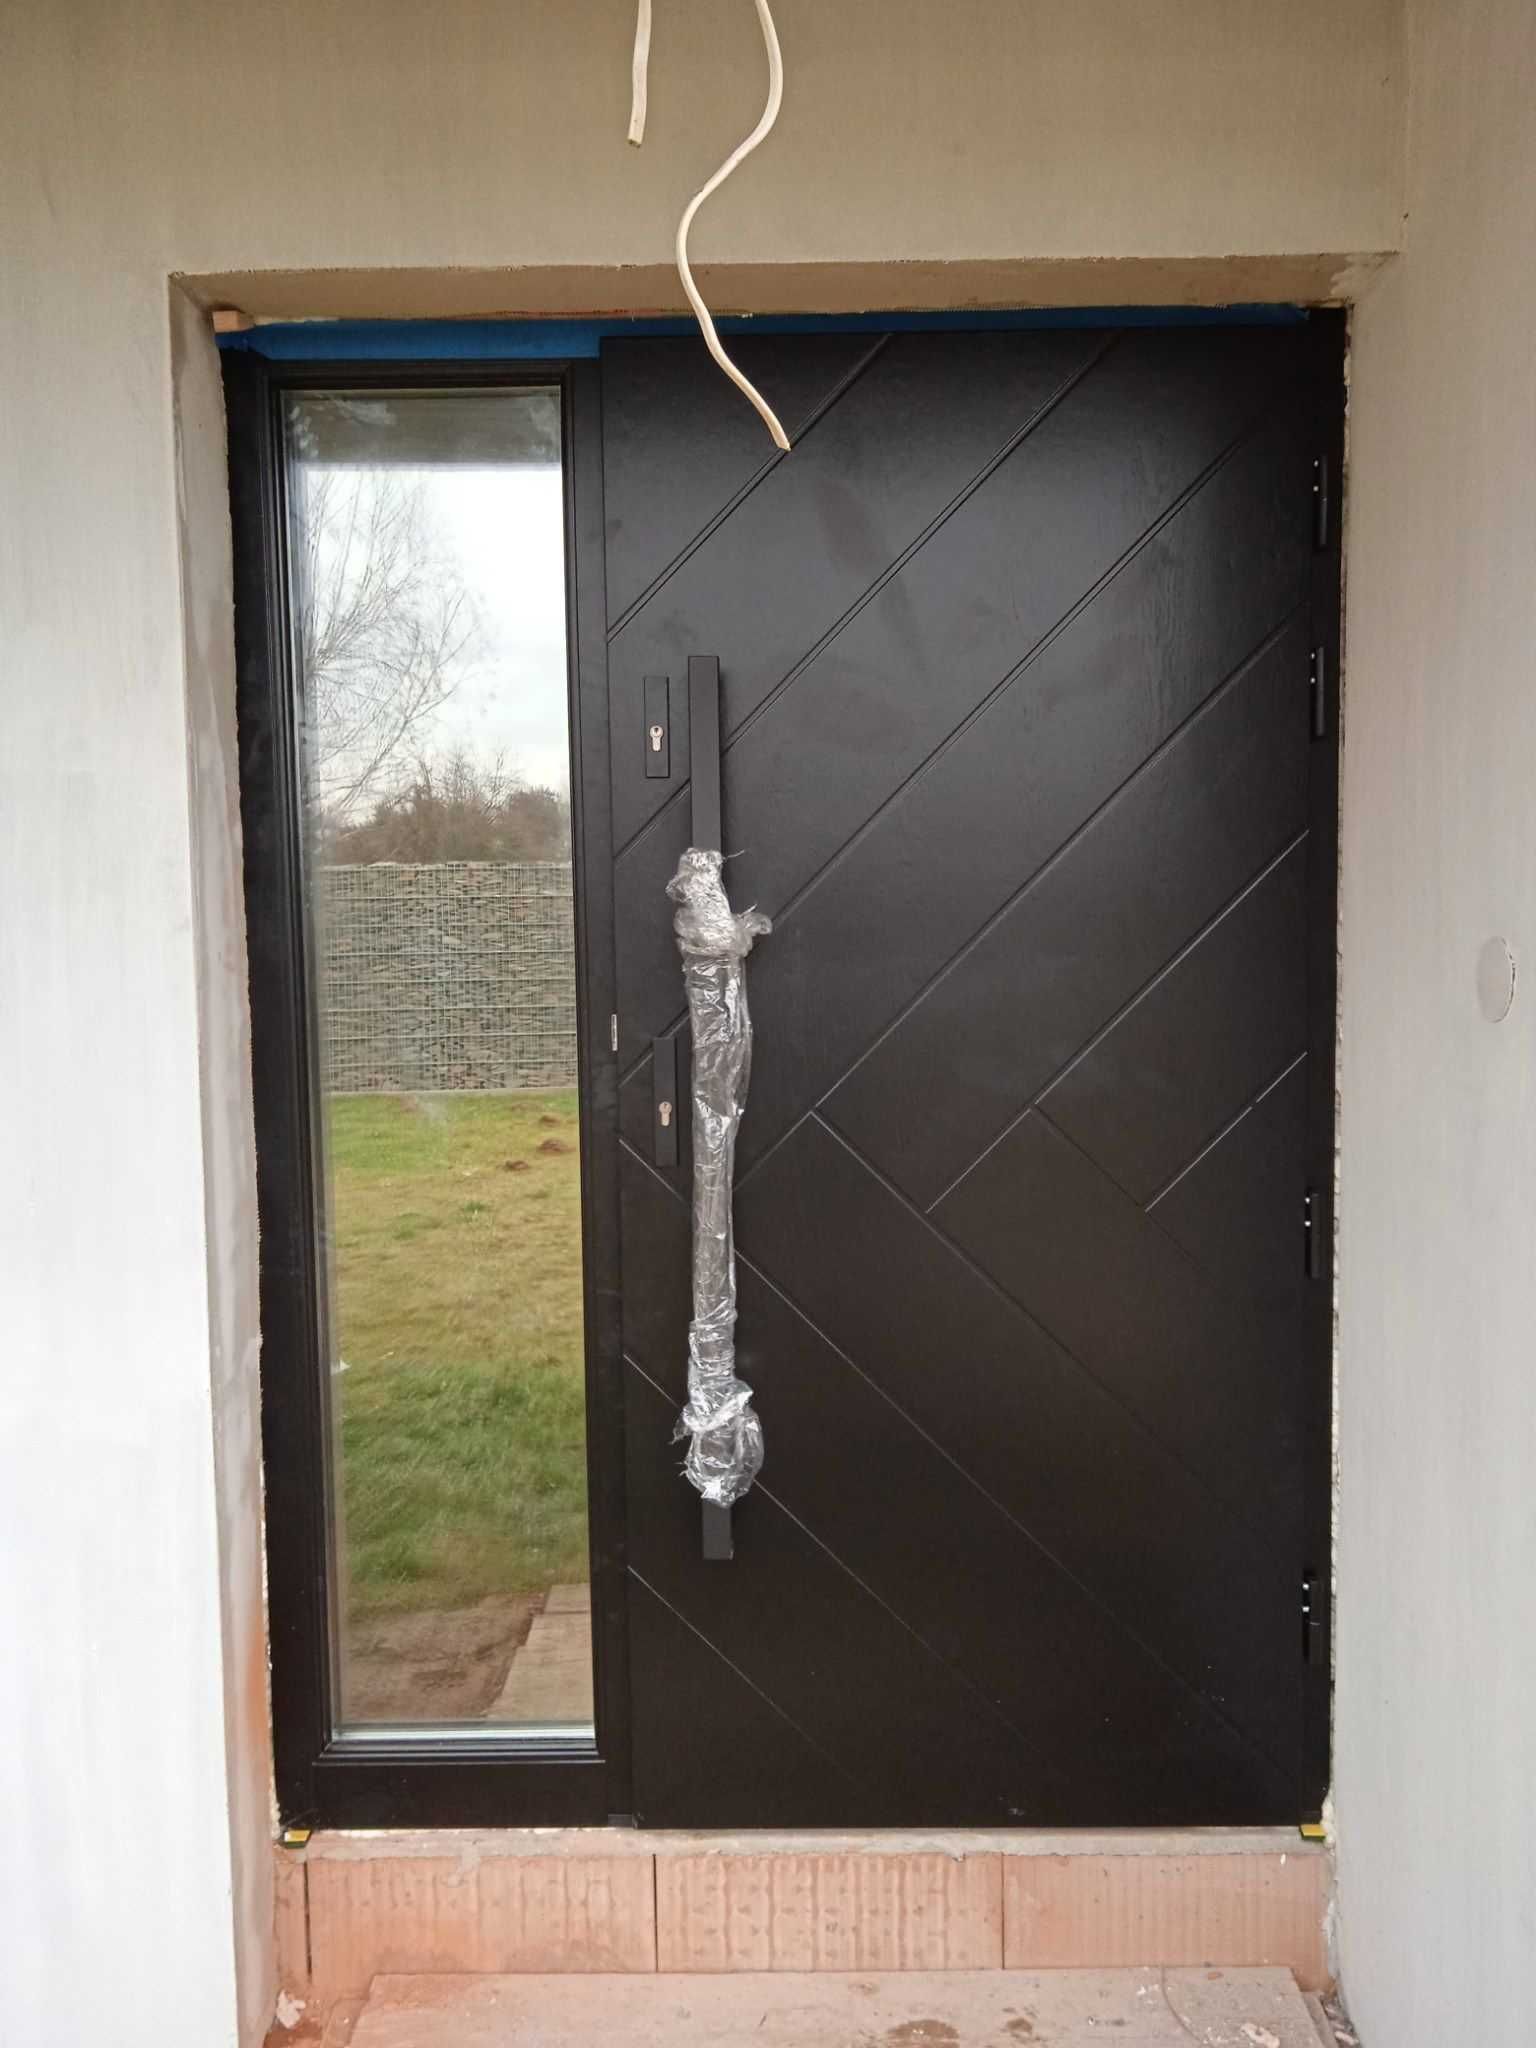 Drzwi zewnętrzne wejściowe dębowe  dostawa GRATIS (czyste powietrze)